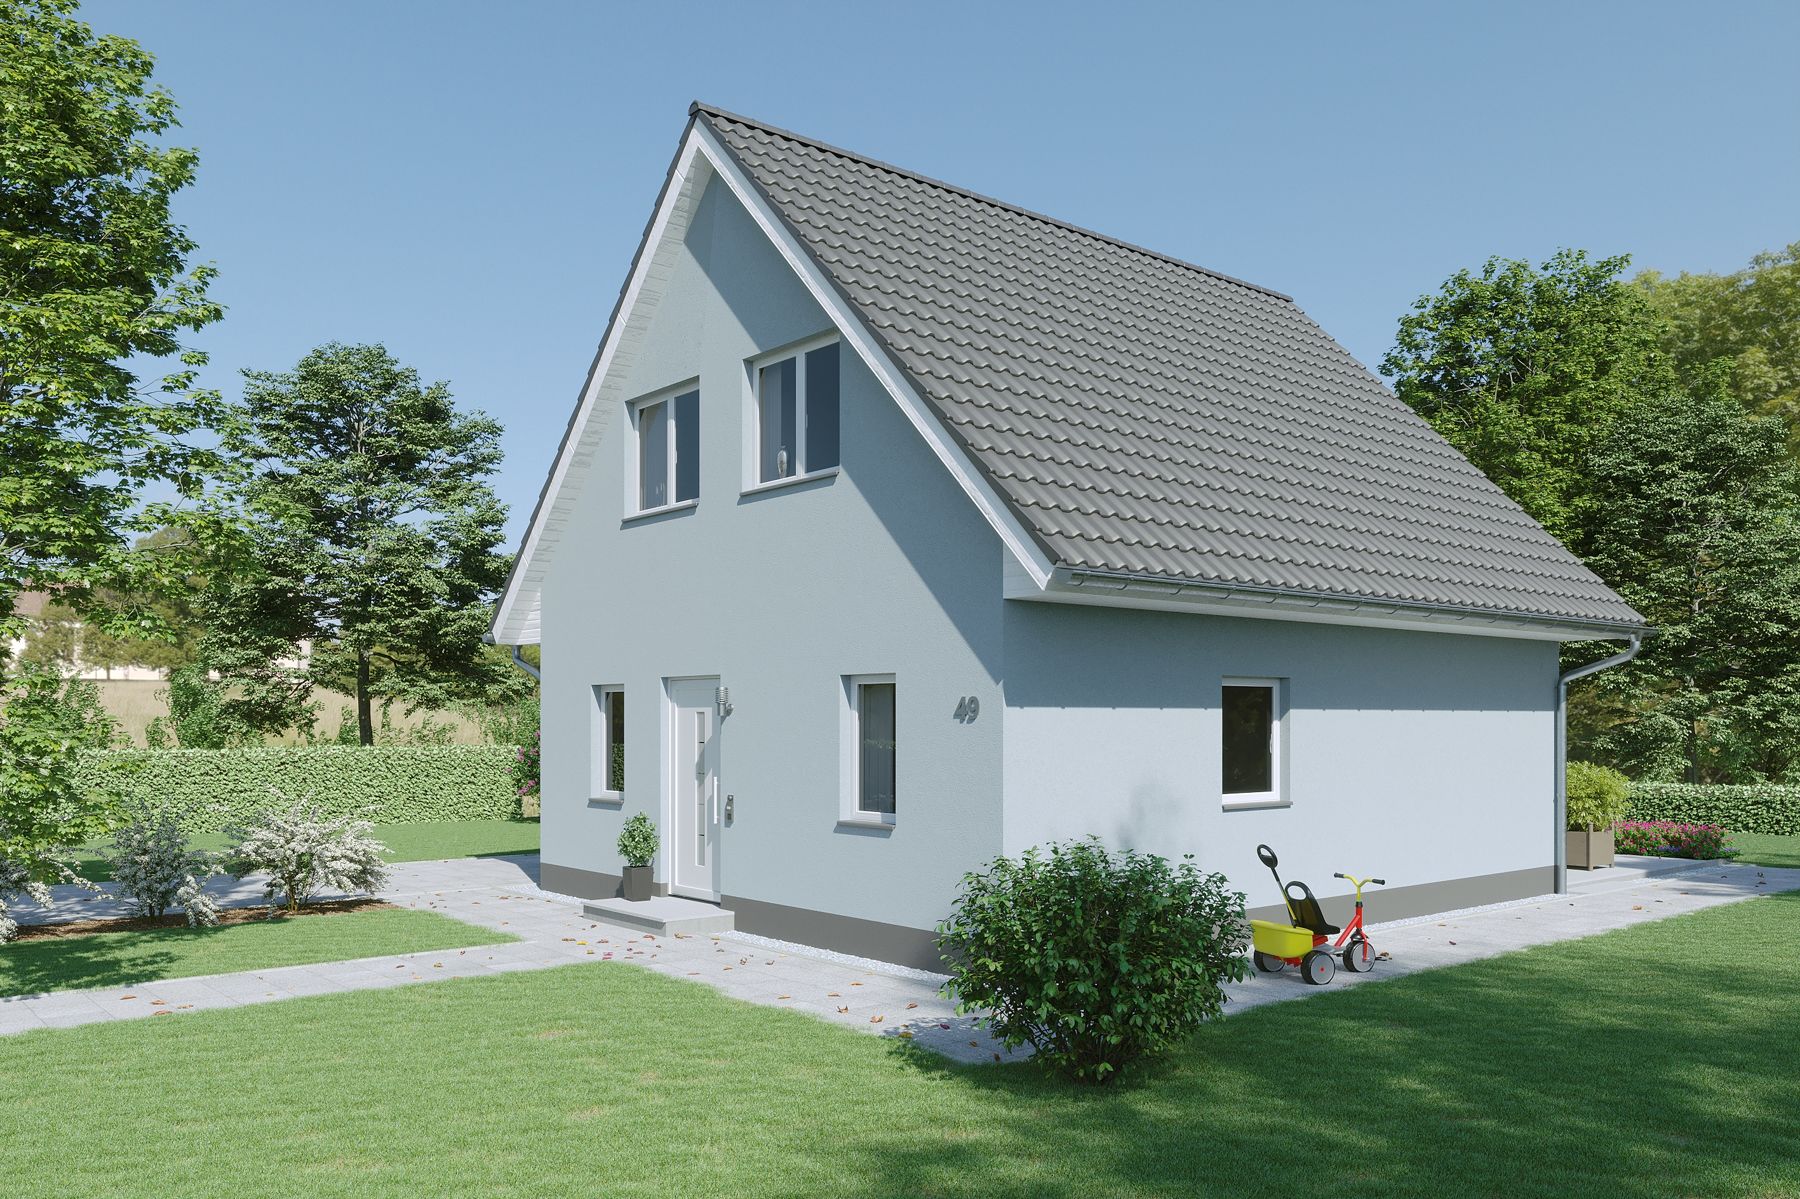 Haus Einfamilienhaus Riesa Effizienzhaus 40 mit Photovoltaikanlage gibt es in Naunhof.
Febro Massivhaus